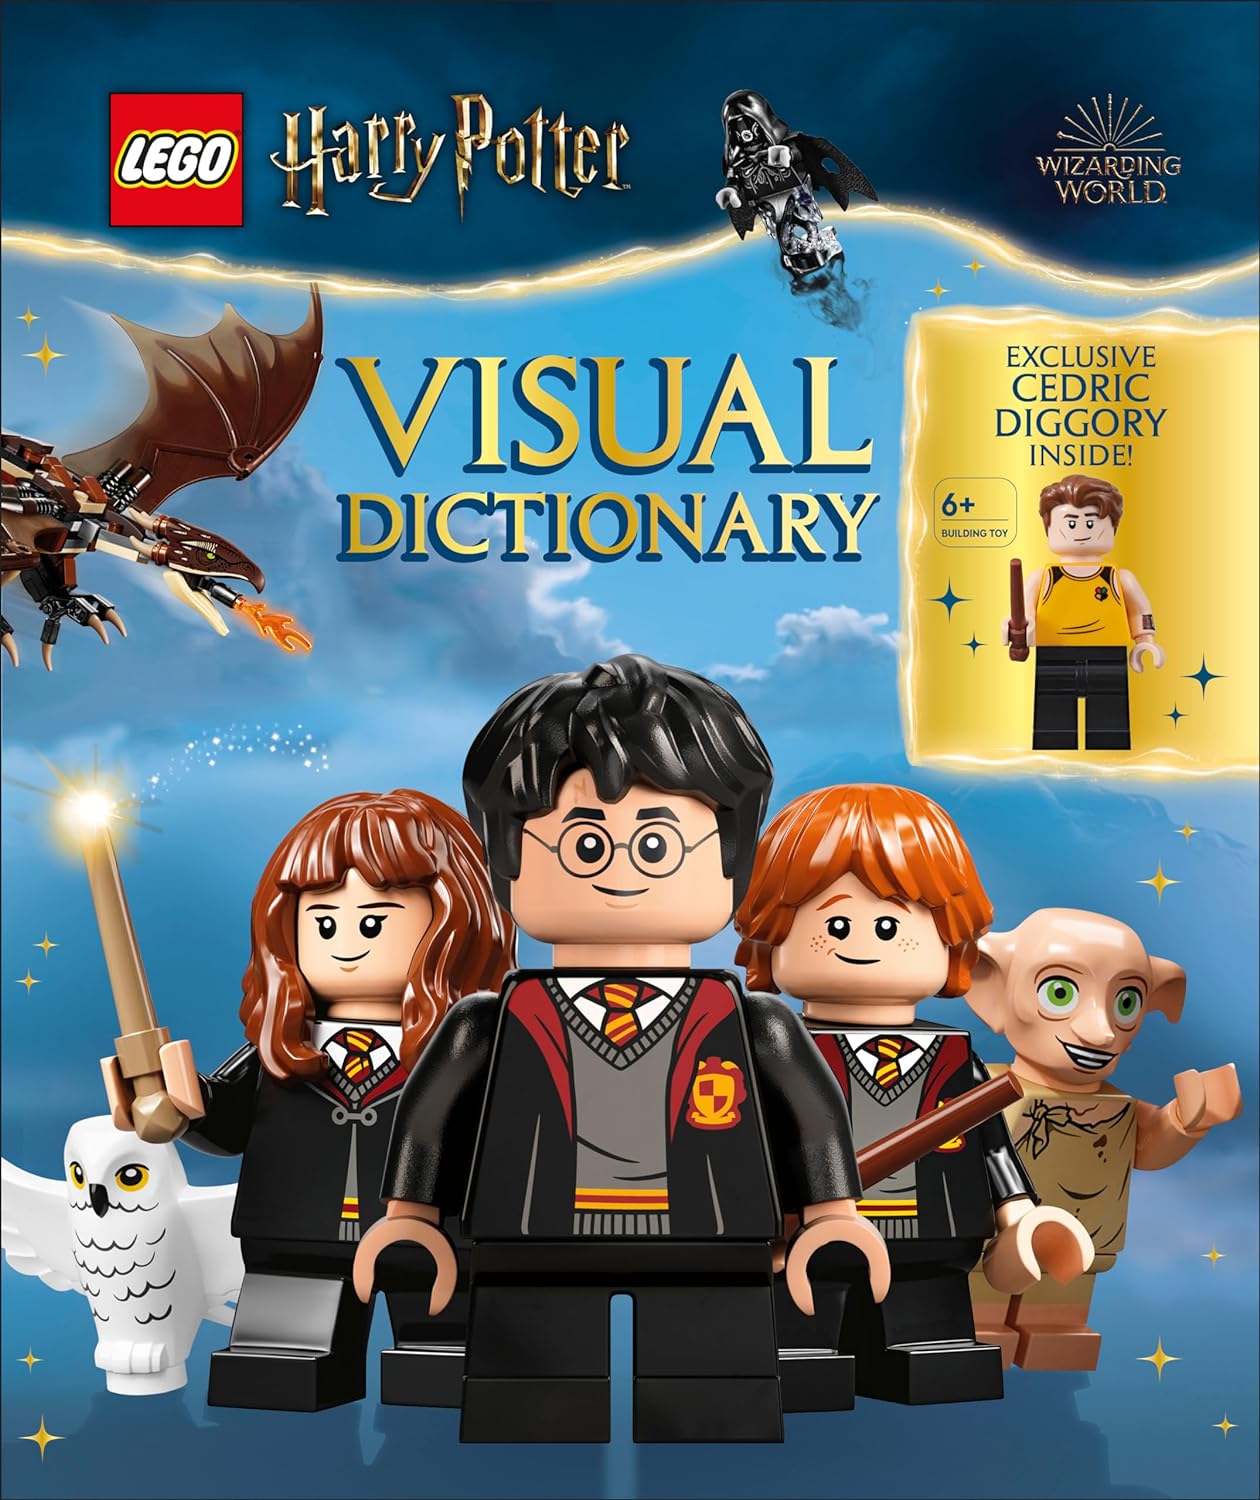 LEGO Harry Potter Visual Dictionary: primi dettagli